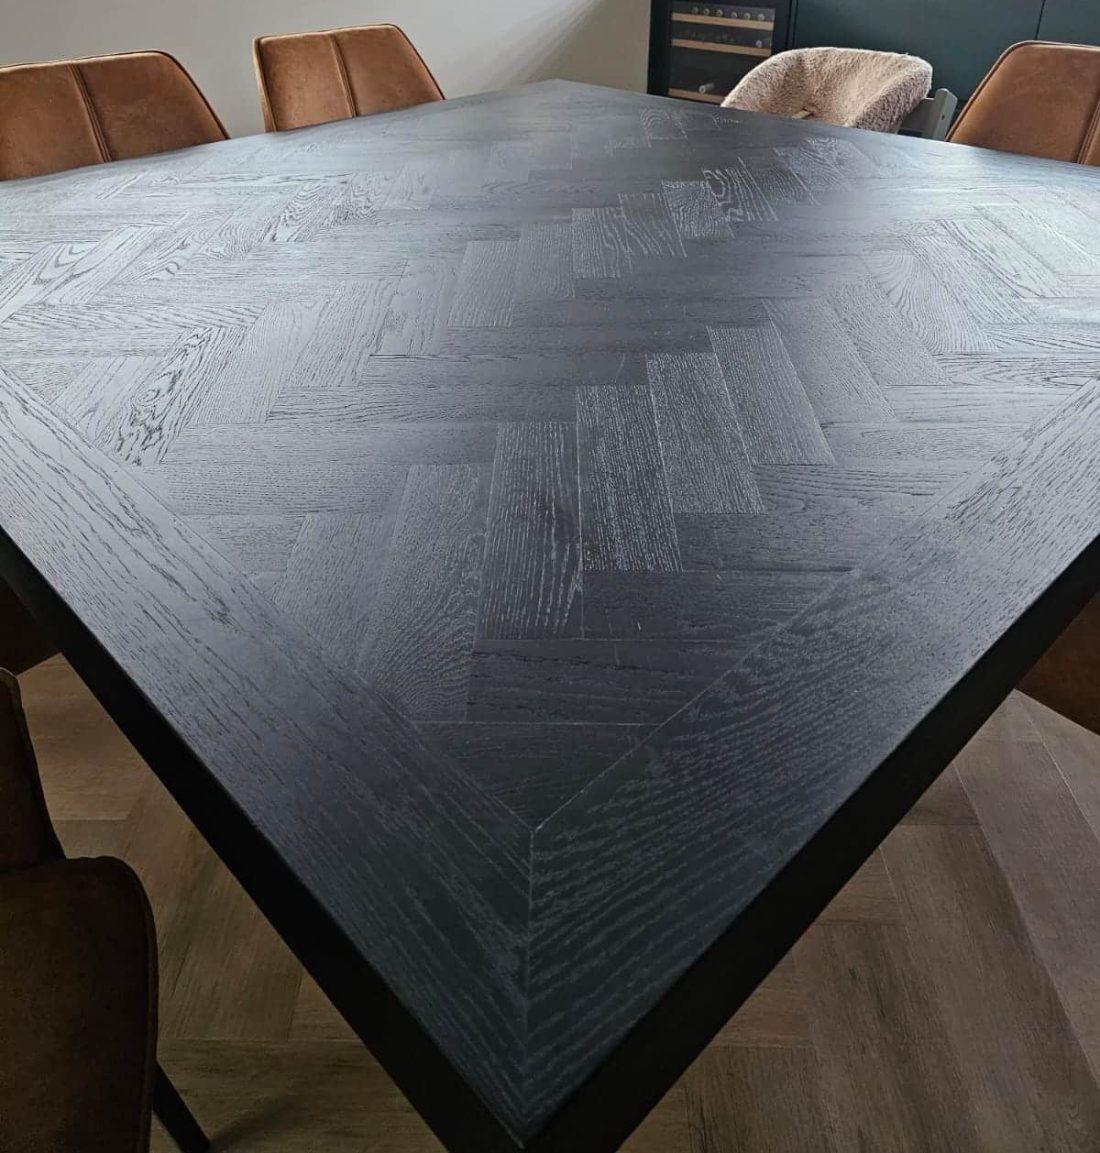 Mosina visgraat eiken tafel 160 x 160 x 8cm vierkant in de kleur black met matrix onderstel 10 x 10cm kaalstaal